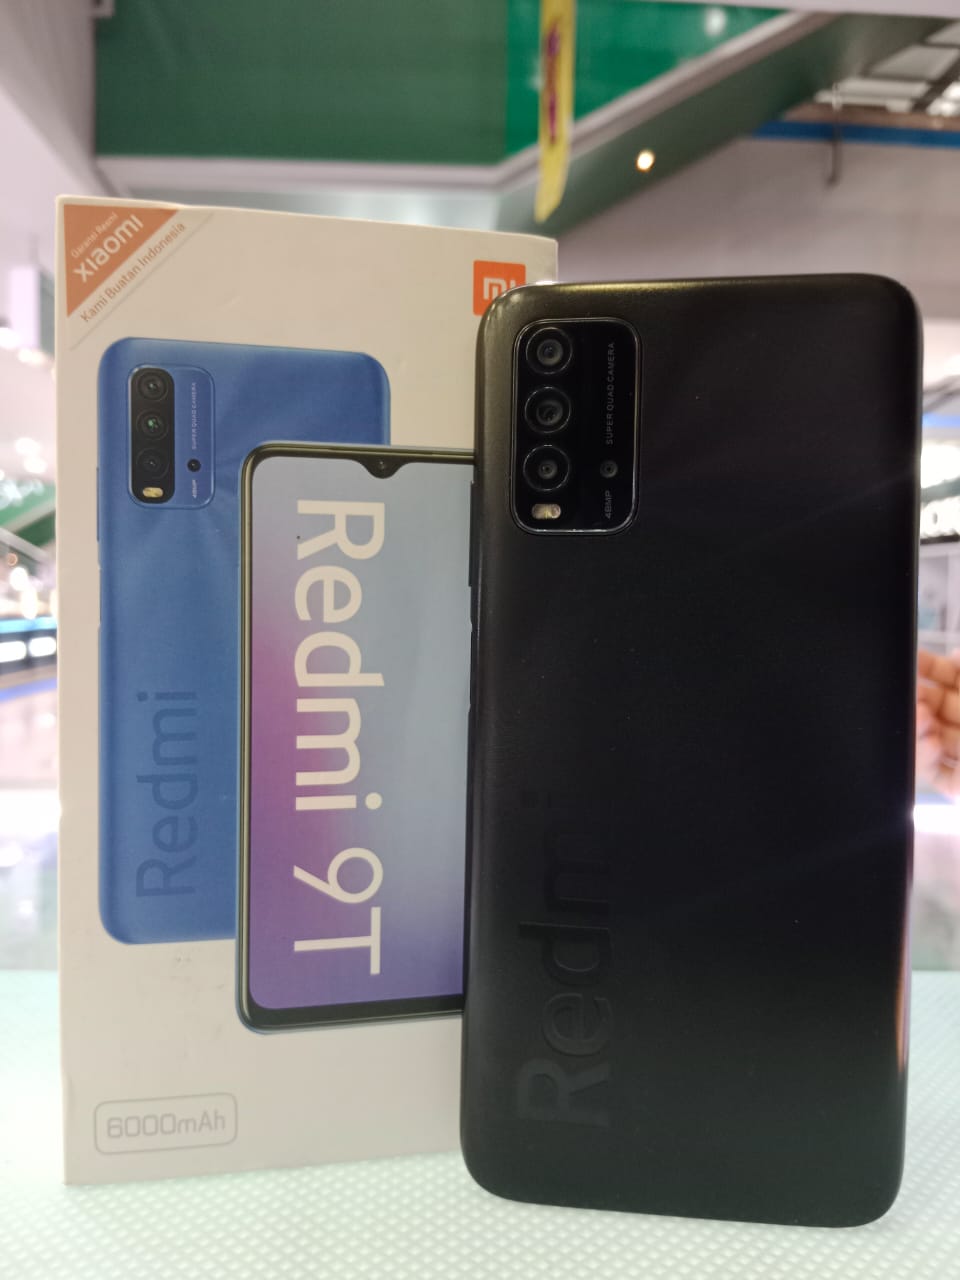 Jual Xiaomi Redmi 9t 4/64 Terbaru - Oct 2022 | Lazada.co.id